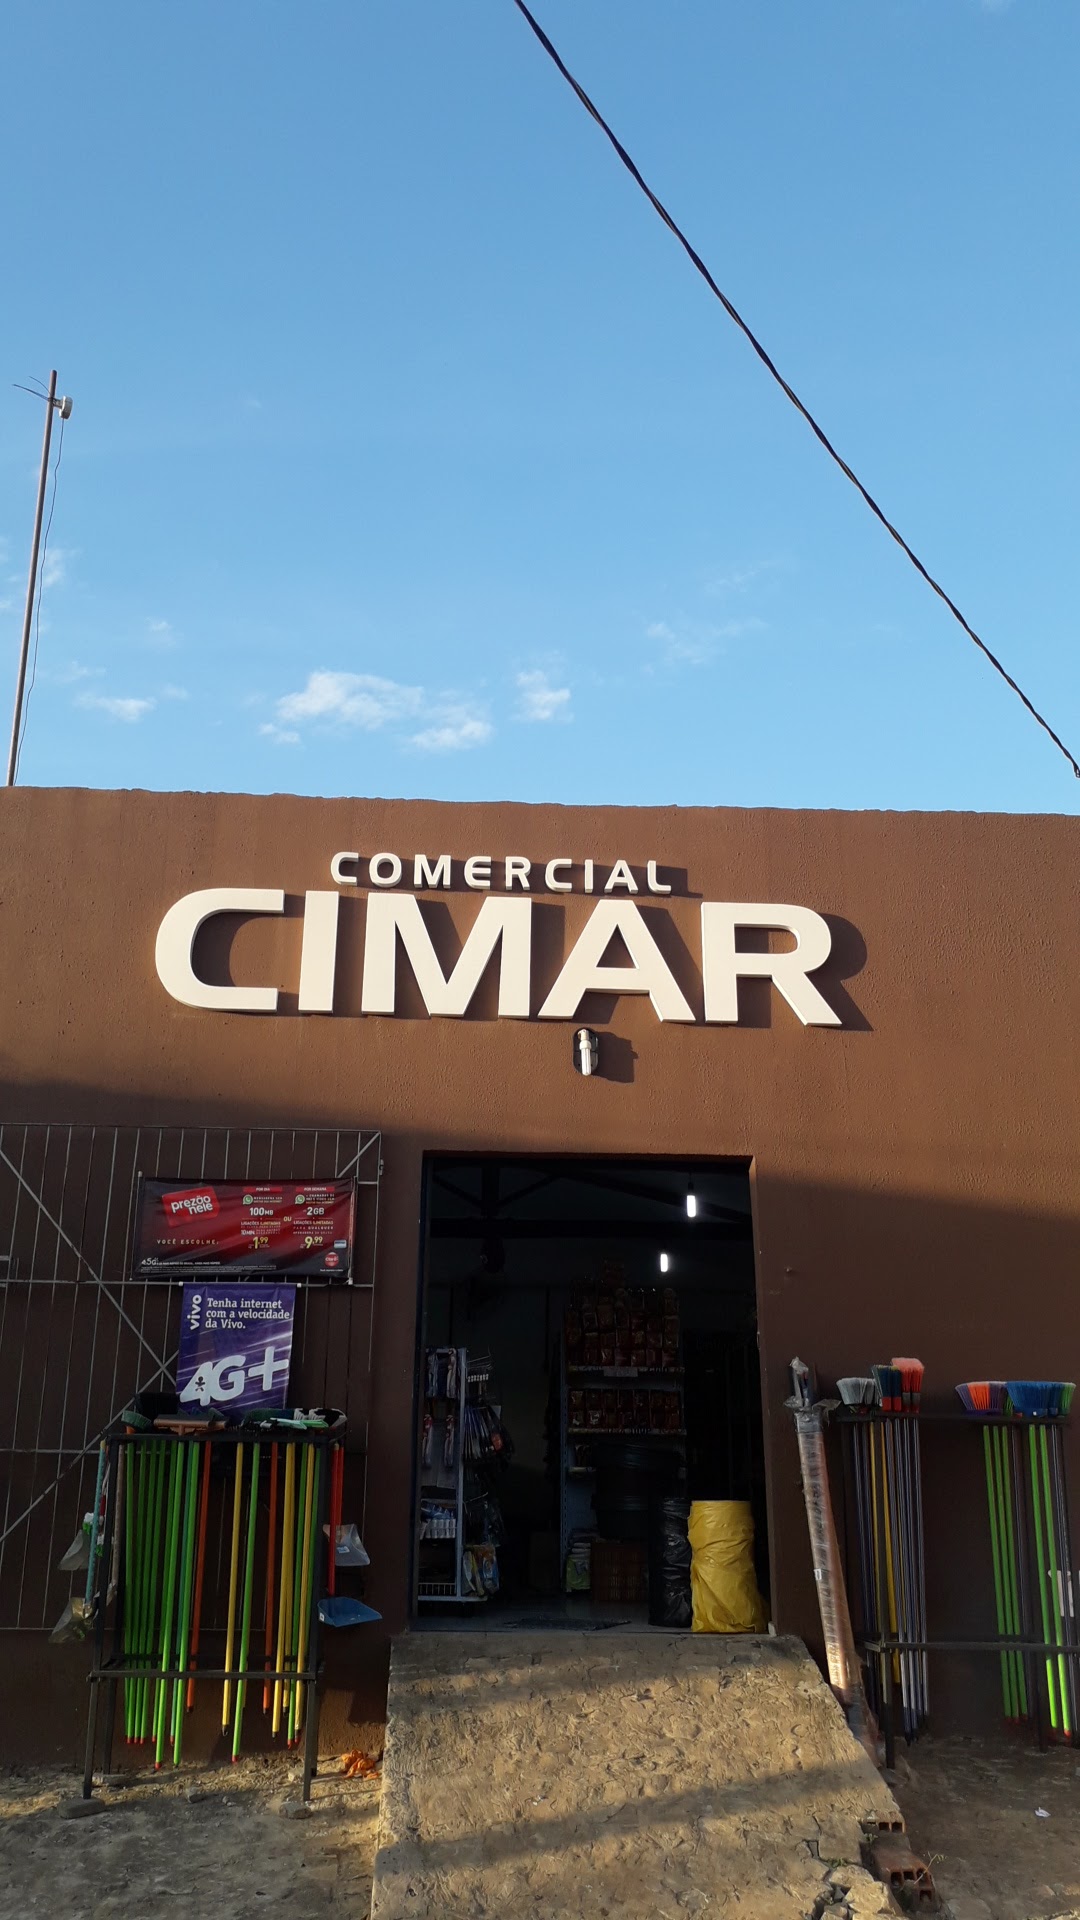 Comercial Cimar